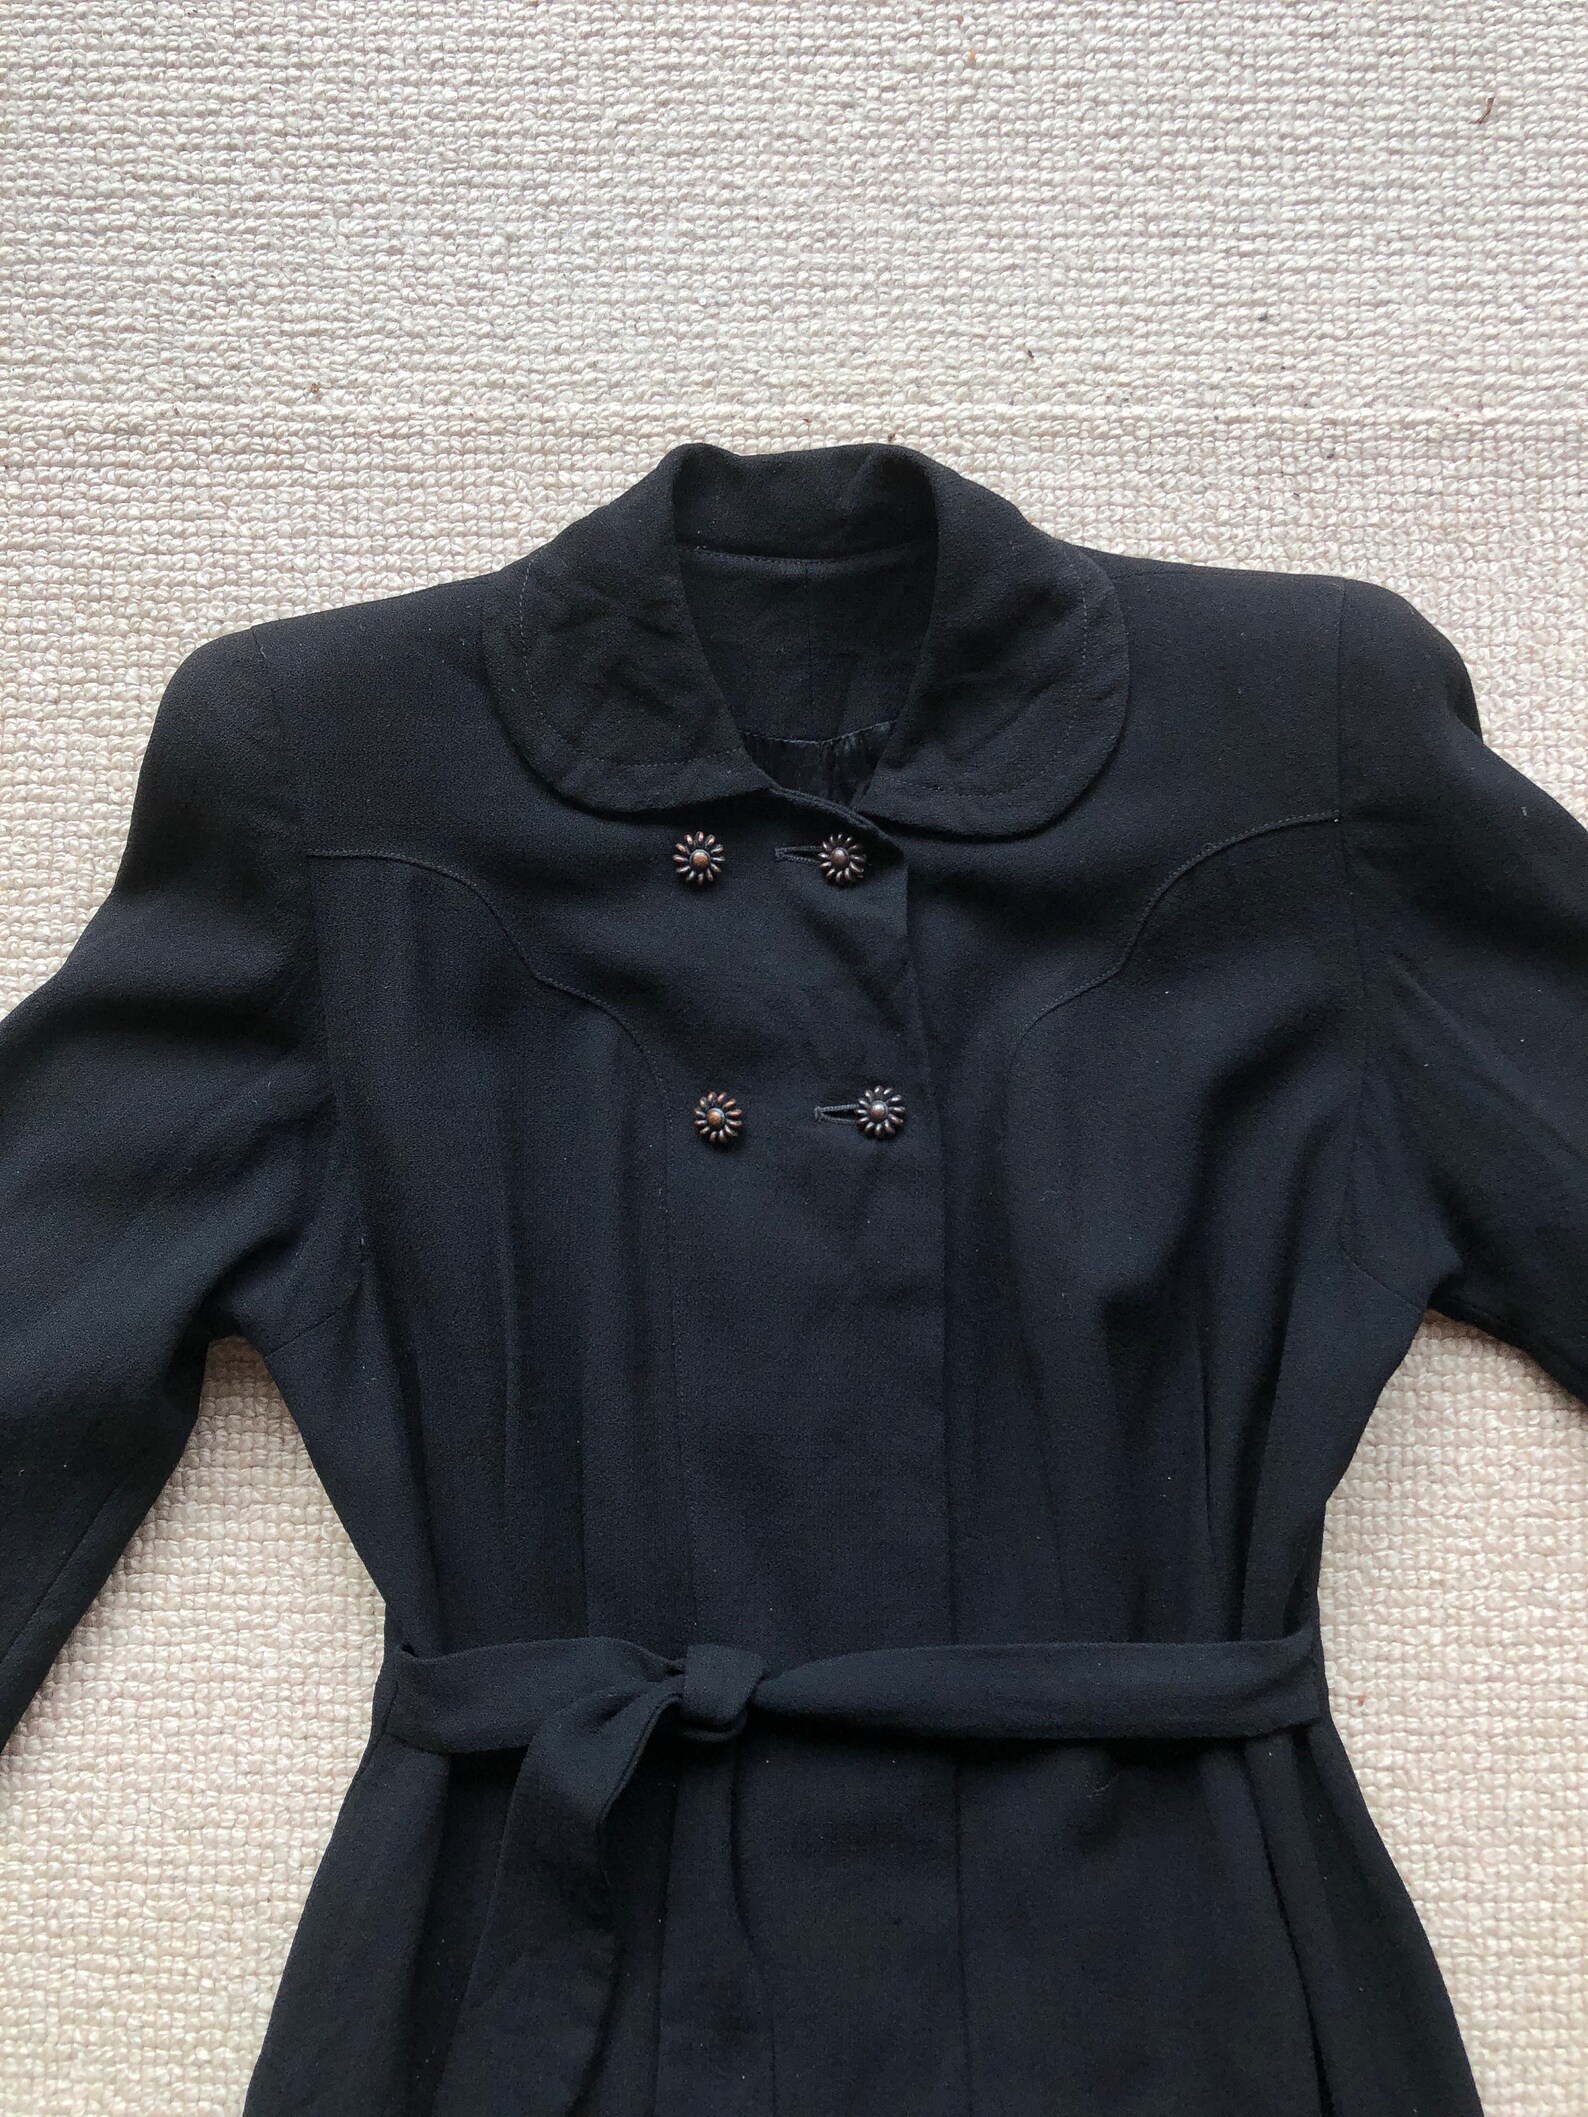 Vintage 1940s Black Wool Coat Jacket HUGE Shoulder Pads Art - Etsy